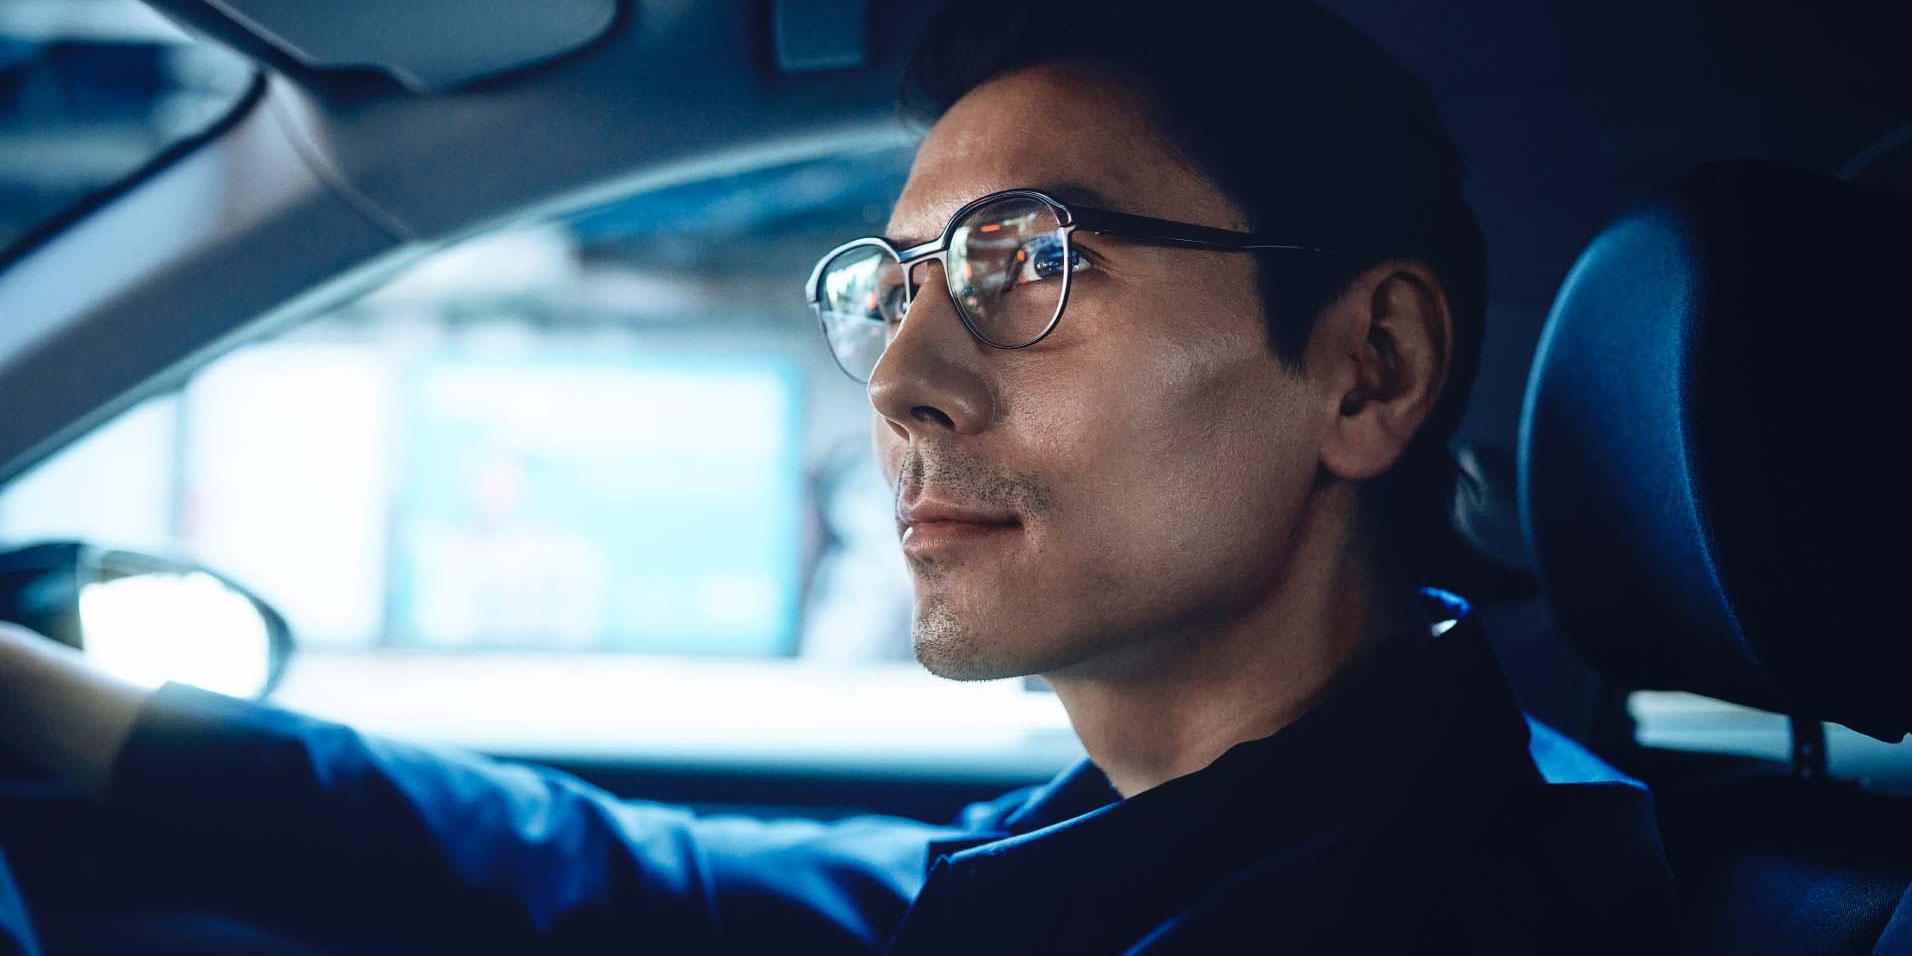 De beste brillenglazen voor autorijden - veilig aankomen op de plaats van bestemming